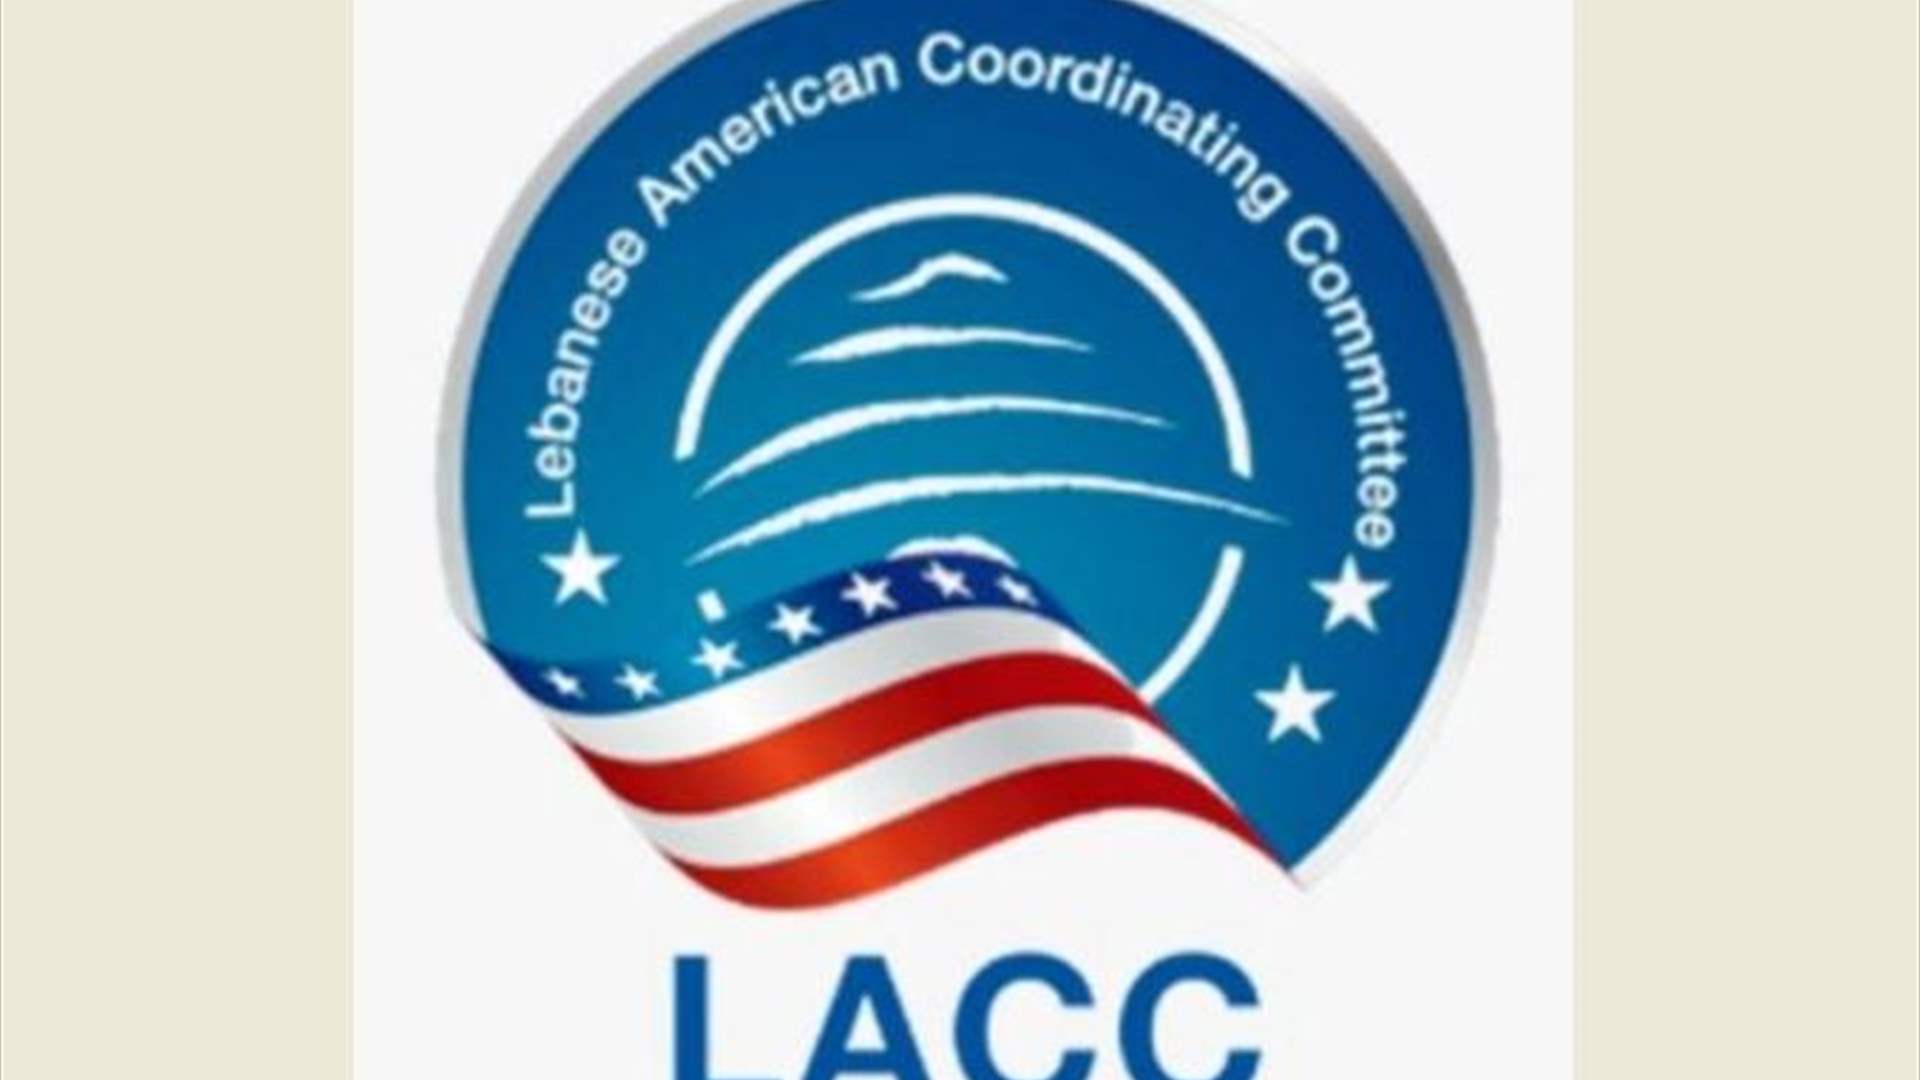 لجنة التنسيق اللبنانيّة-الأميركيّة (LACC): سيادة واستقلال وحرية ووحدة لبنان جزء من الأمن والاستقرار الإقليمي والدولي